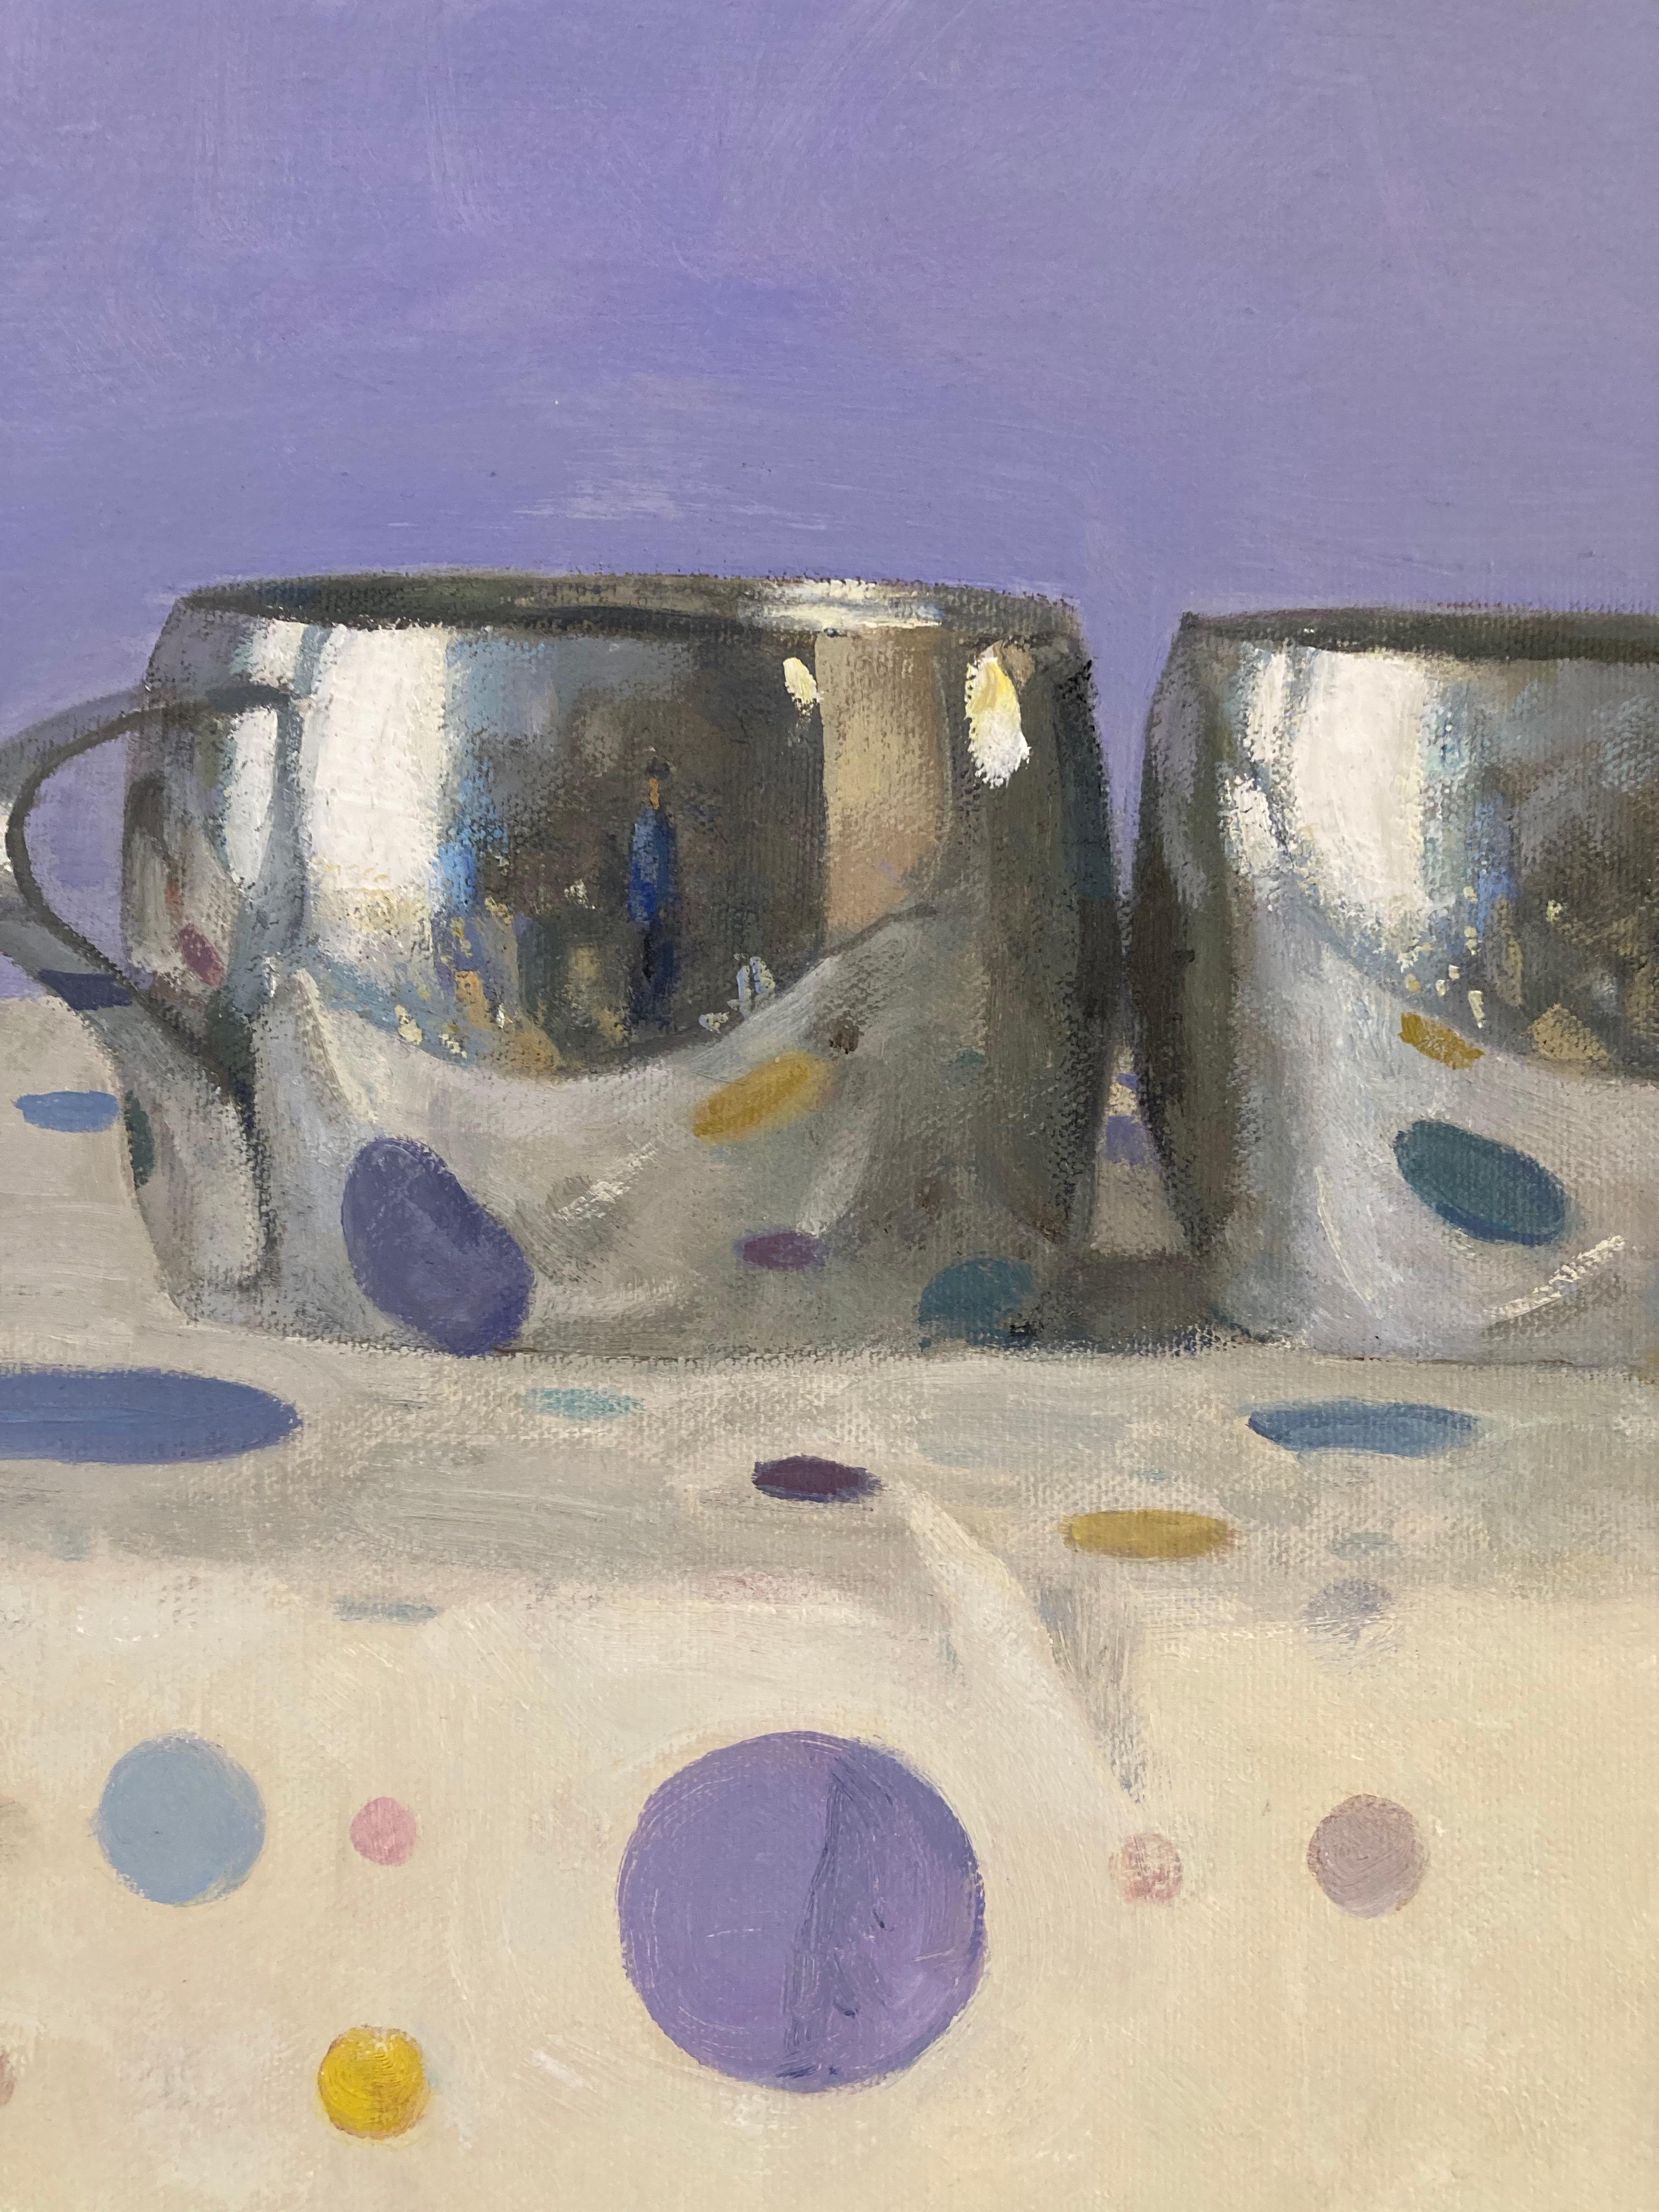 « Deux tasses en argent, reflets de portraits à pois, lavande, jaune, bleue, rose » - Painting de Olga Antonova